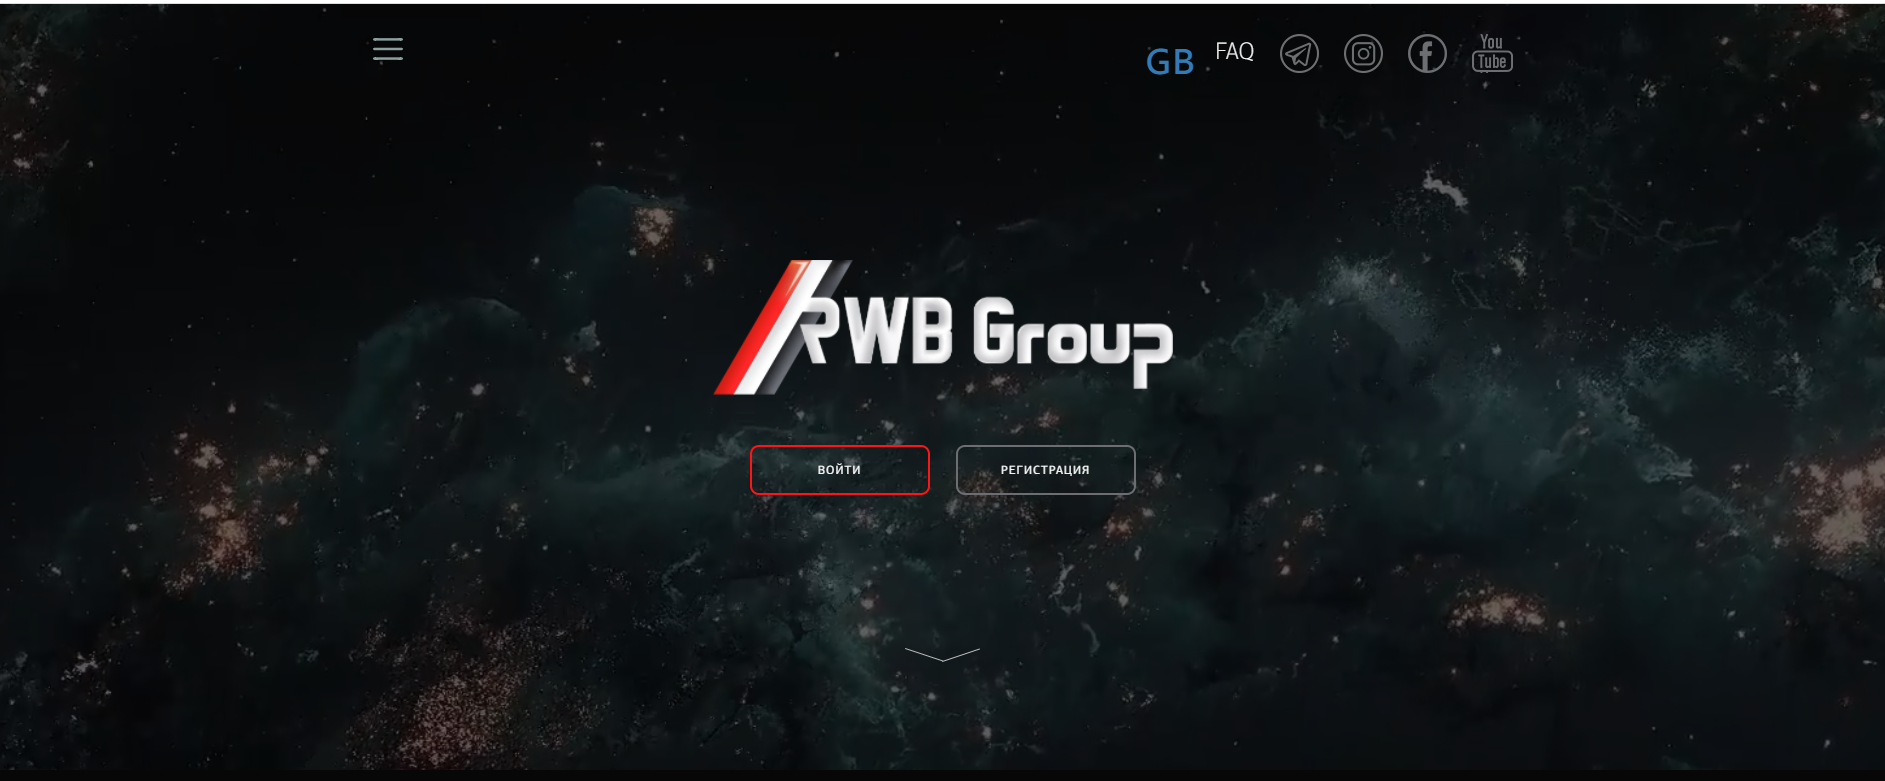 Главная сайта RWB Group